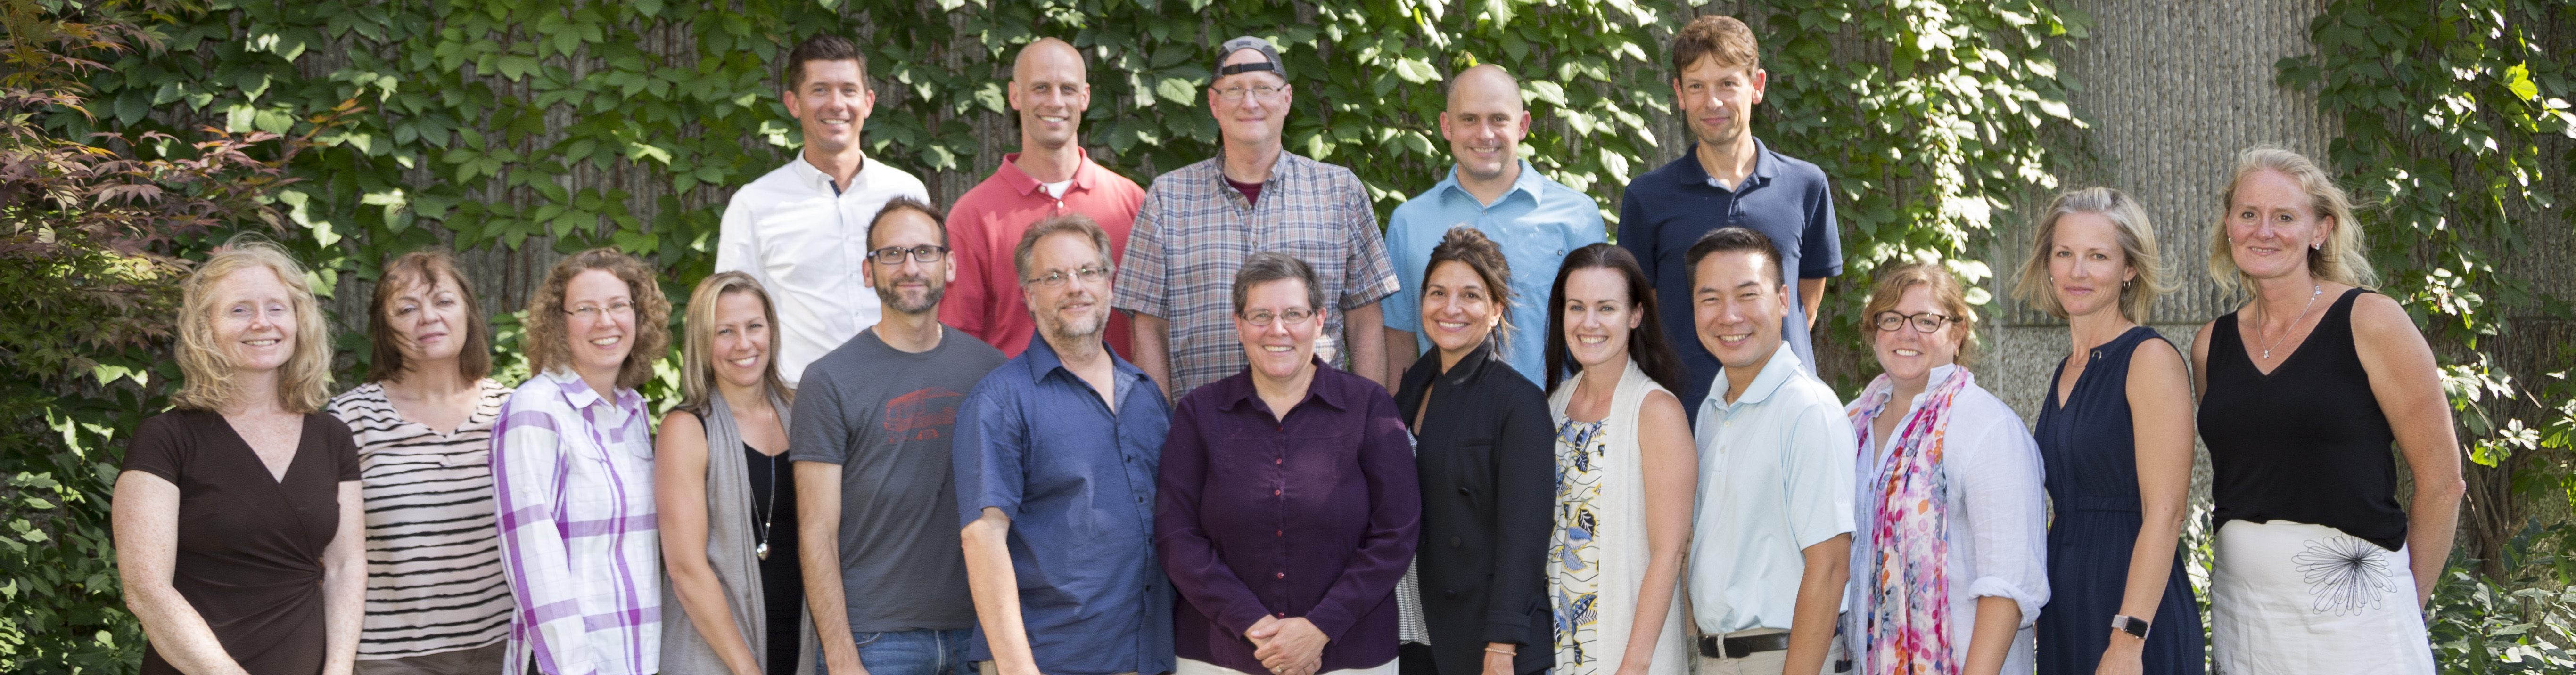 HHNS Faculty group photo taken in September 2018